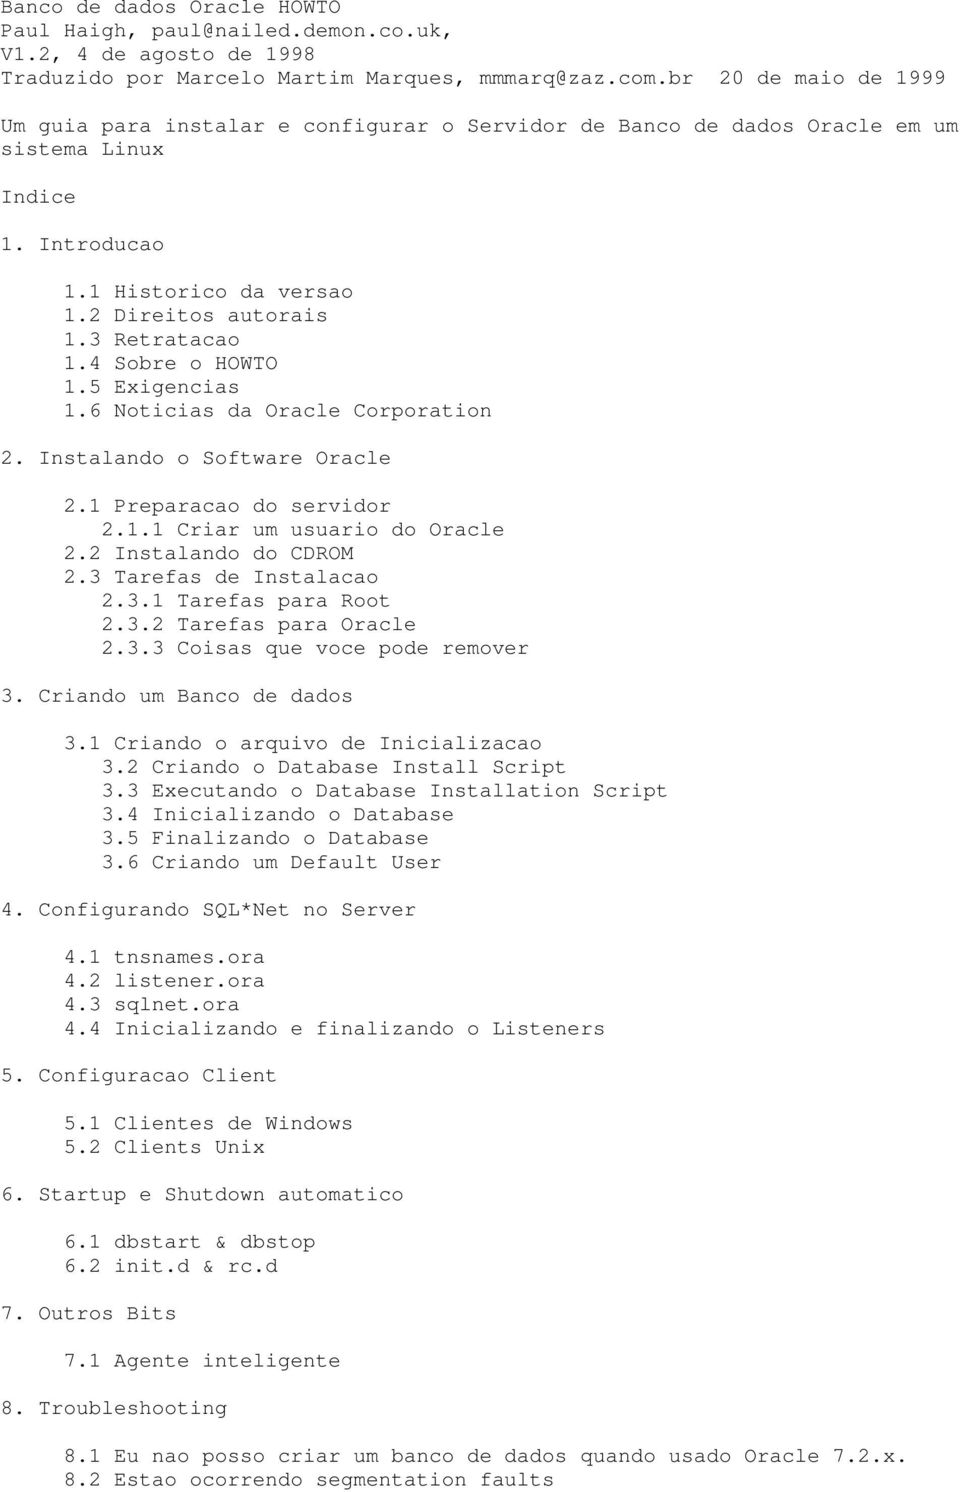 4 Sobre o HOWTO 1.5 Exigencias 1.6 Noticias da Oracle Corporation 2. Instalando o Software Oracle 2.1 Preparacao do servidor 2.1.1 Criar um usuario do Oracle 2.2 Instalando do CDROM 2.